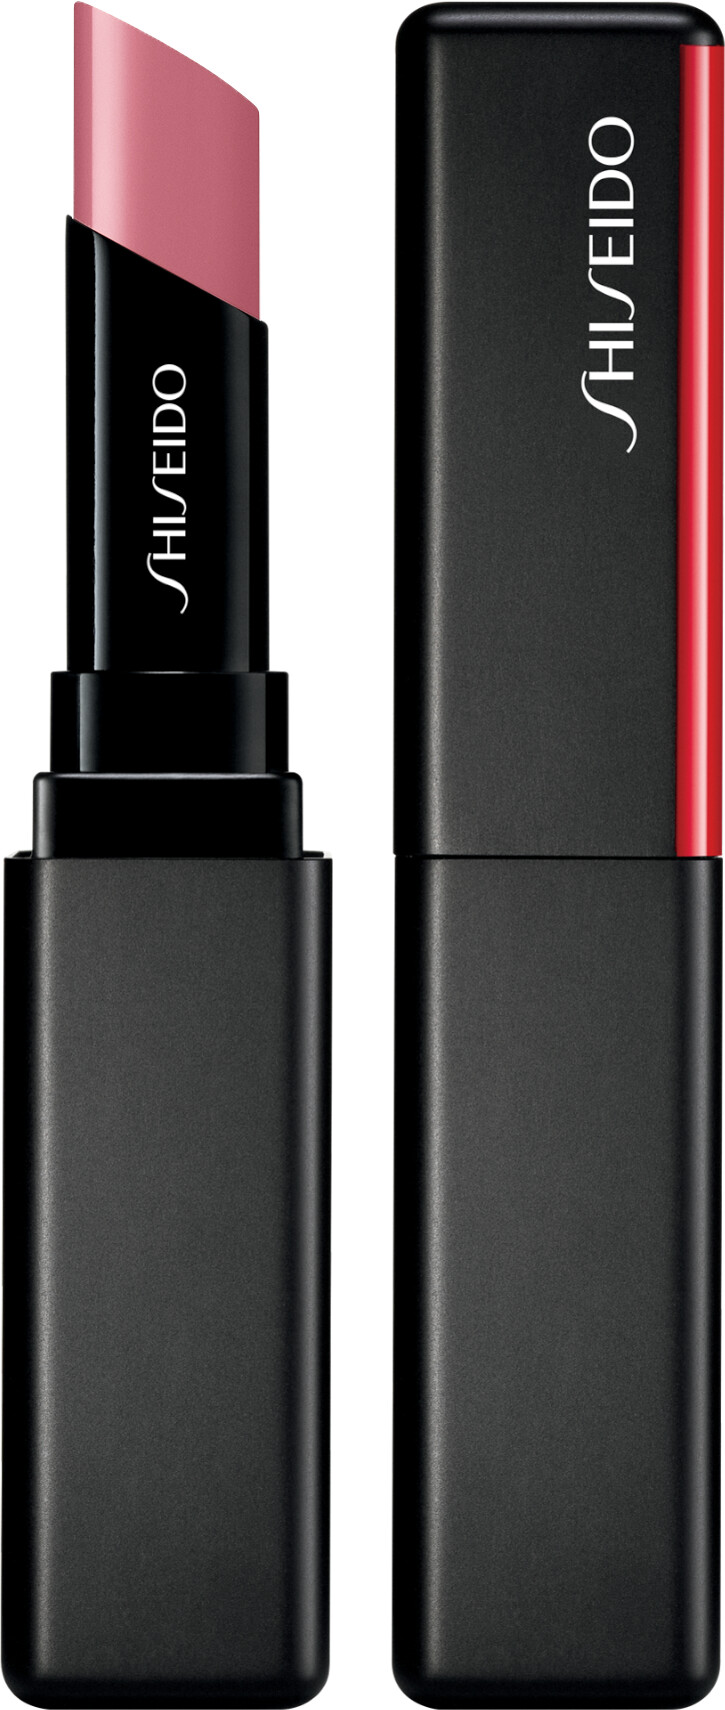 Shiseido ColorGel LipBalm 2g 108 - Lotus